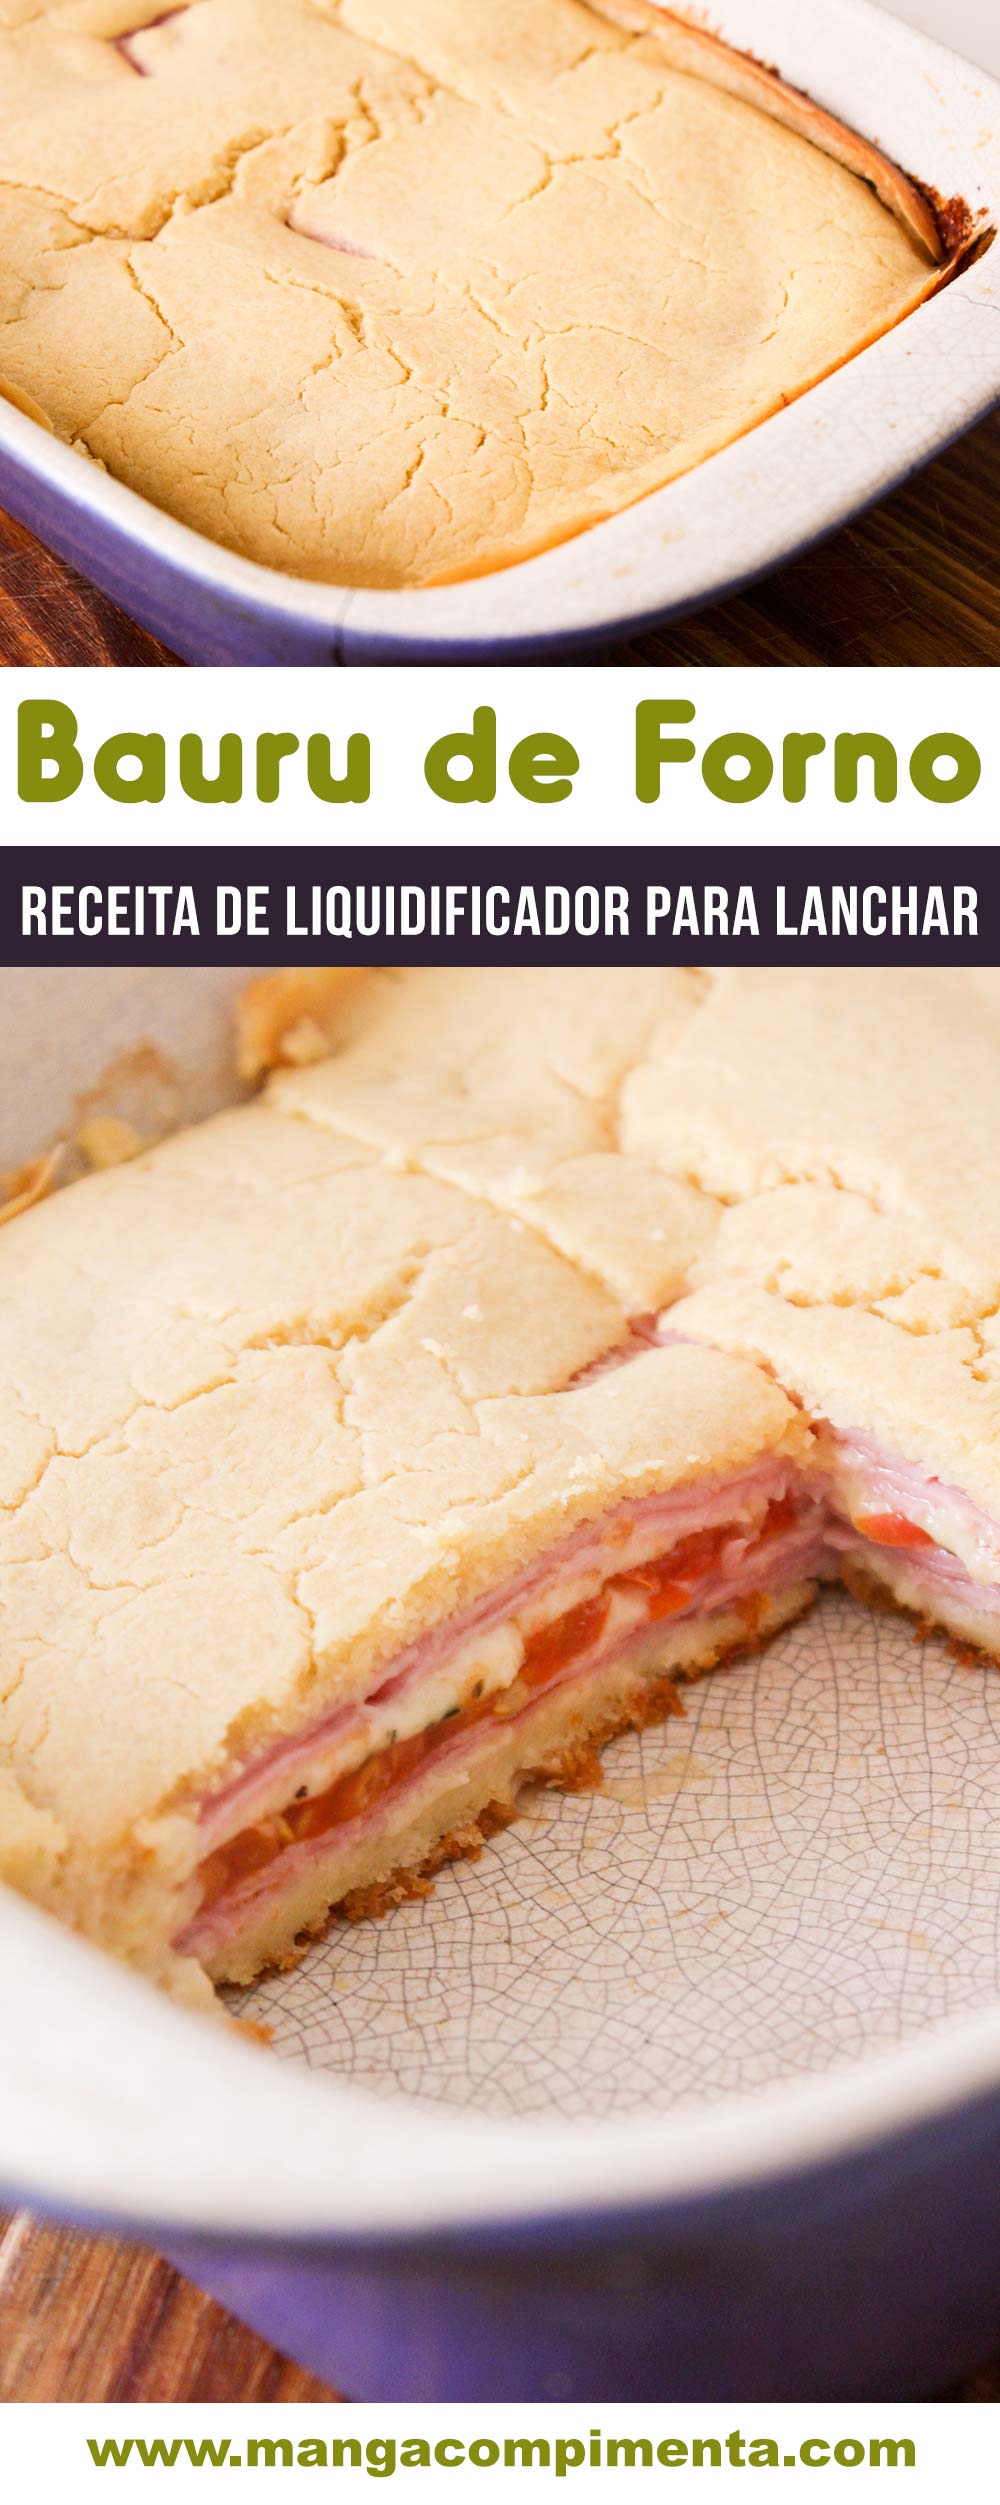 Bauru de Forno - uma deliciosa torta de liquidificador para lanchar com a família!